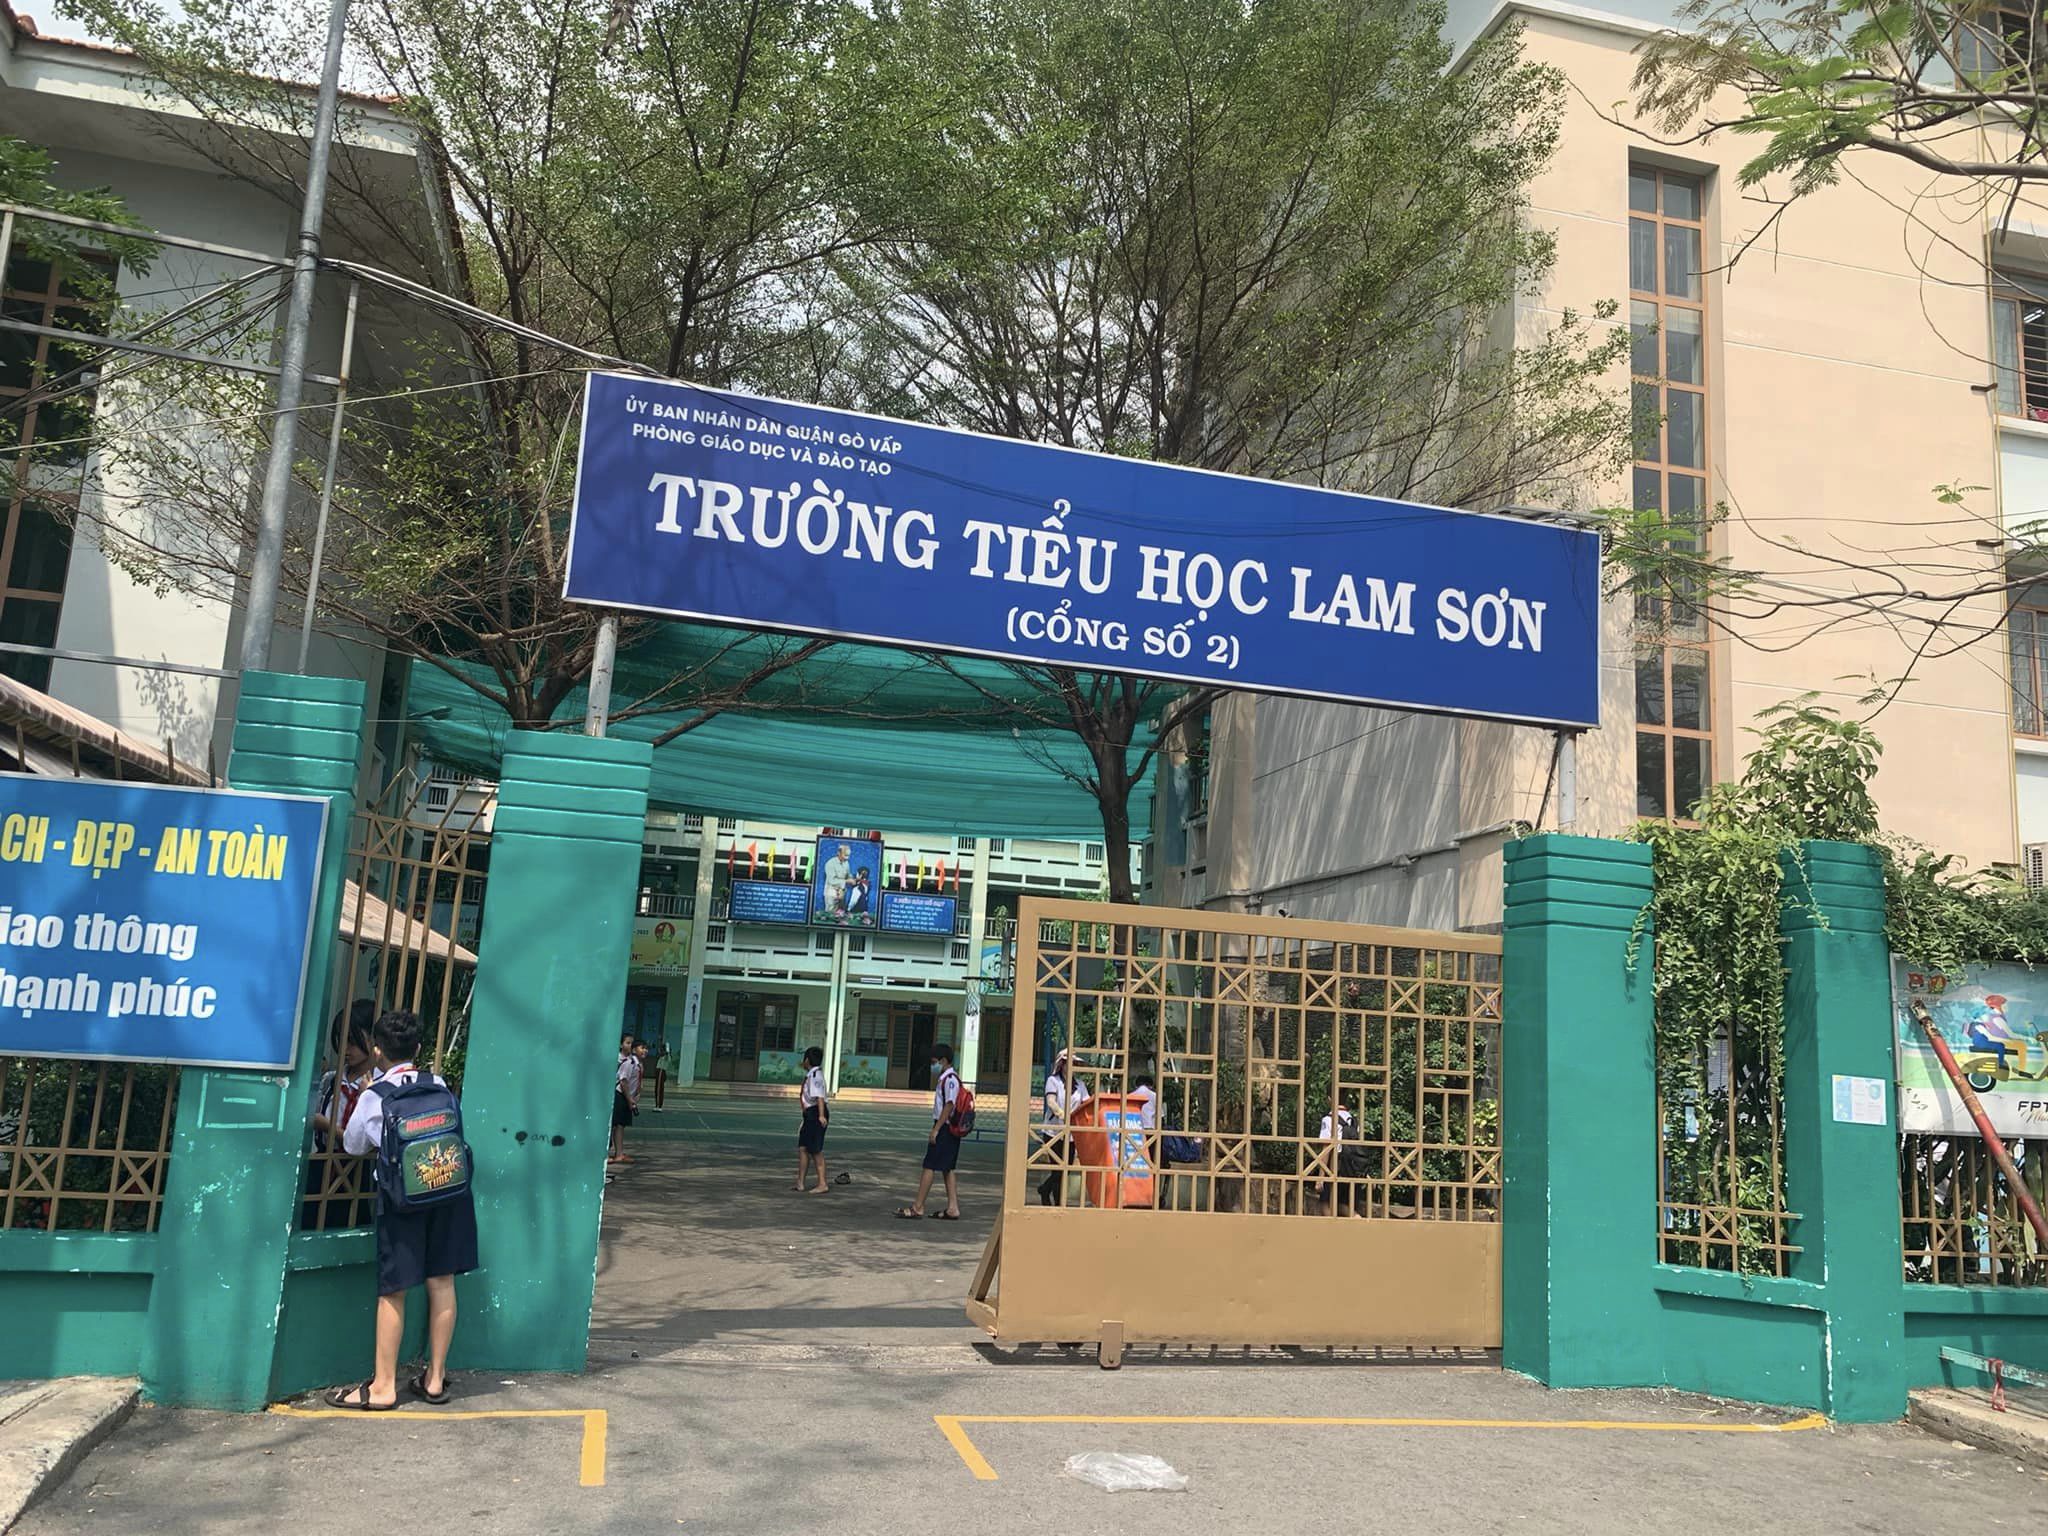 Ô Tô Trong Nhà - Sổ Hoàn Công Đủ - Cách Đường Phạm Văn Chiêu Chỉ 100m - Cạnh Trường Lam Sơn - Chợ